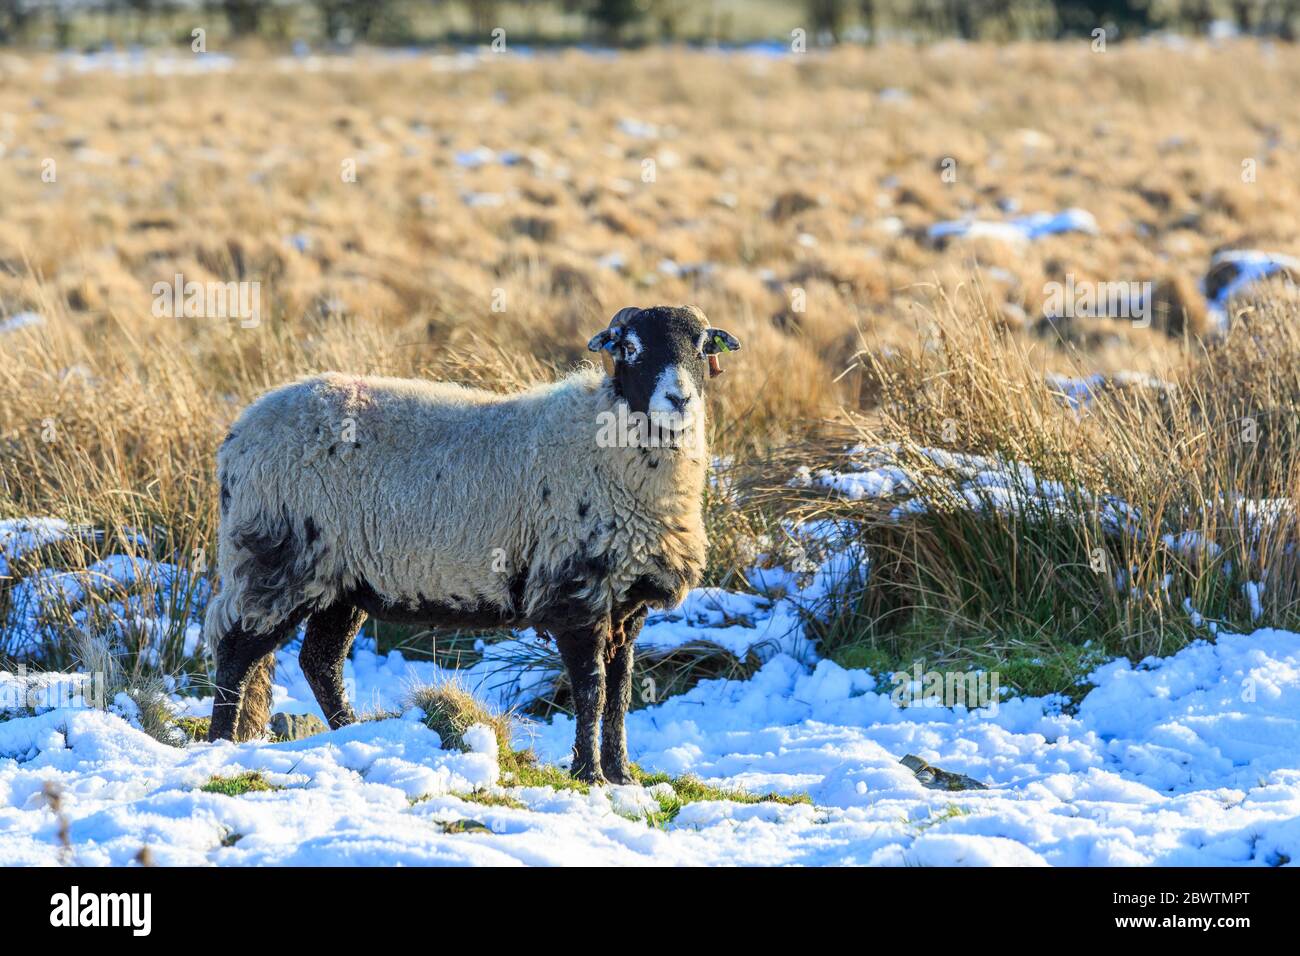 Moutons écossais Blackface debout dans un pré couvert de neige Banque D'Images